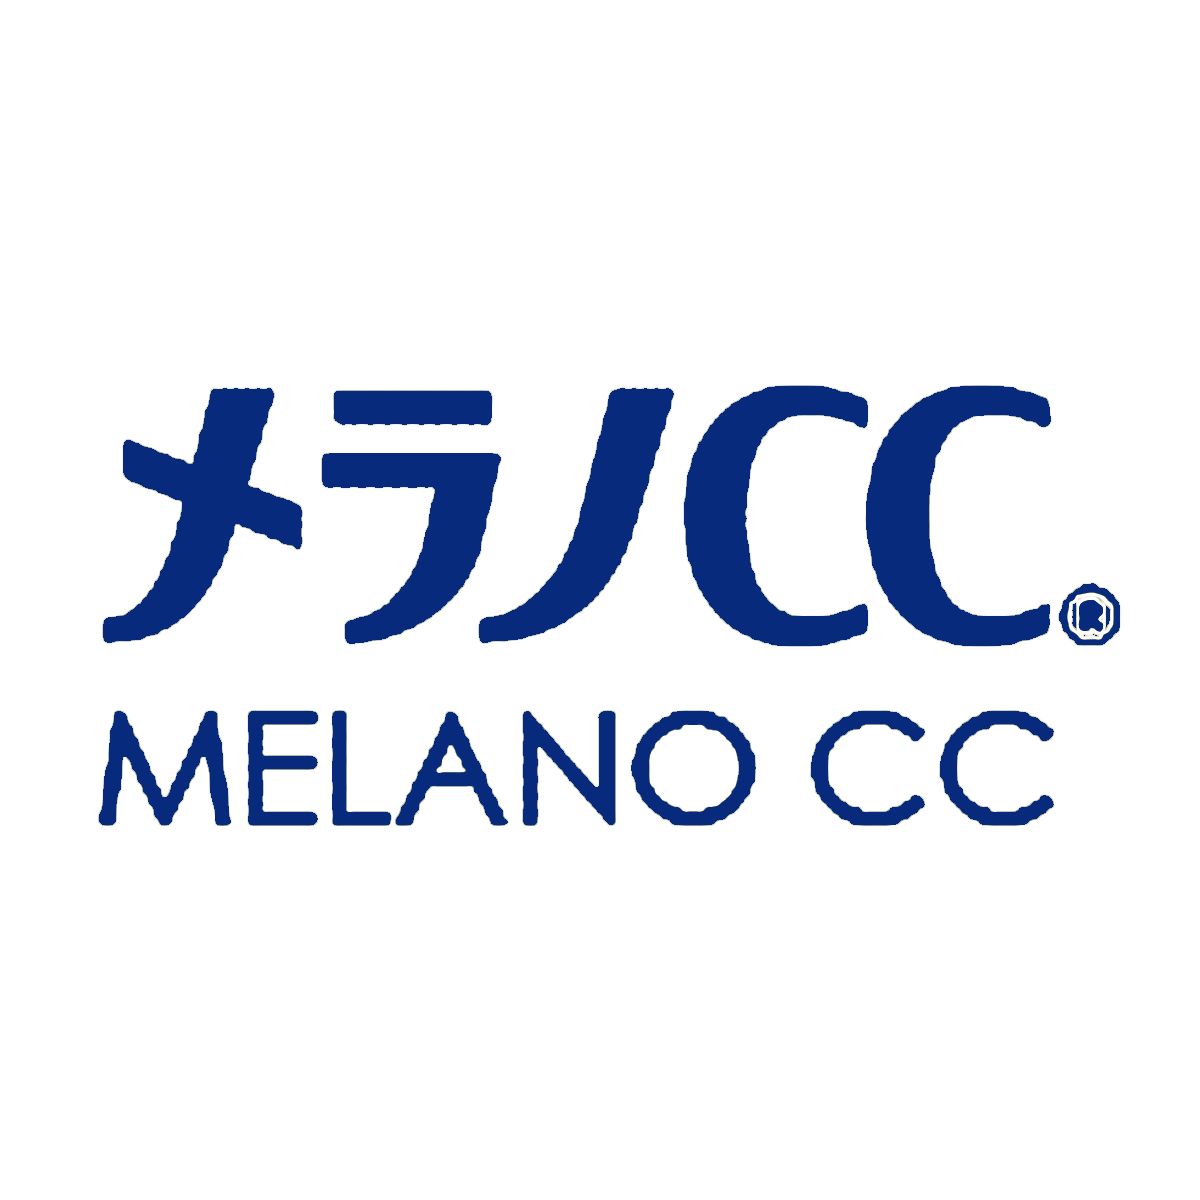 Melano CC